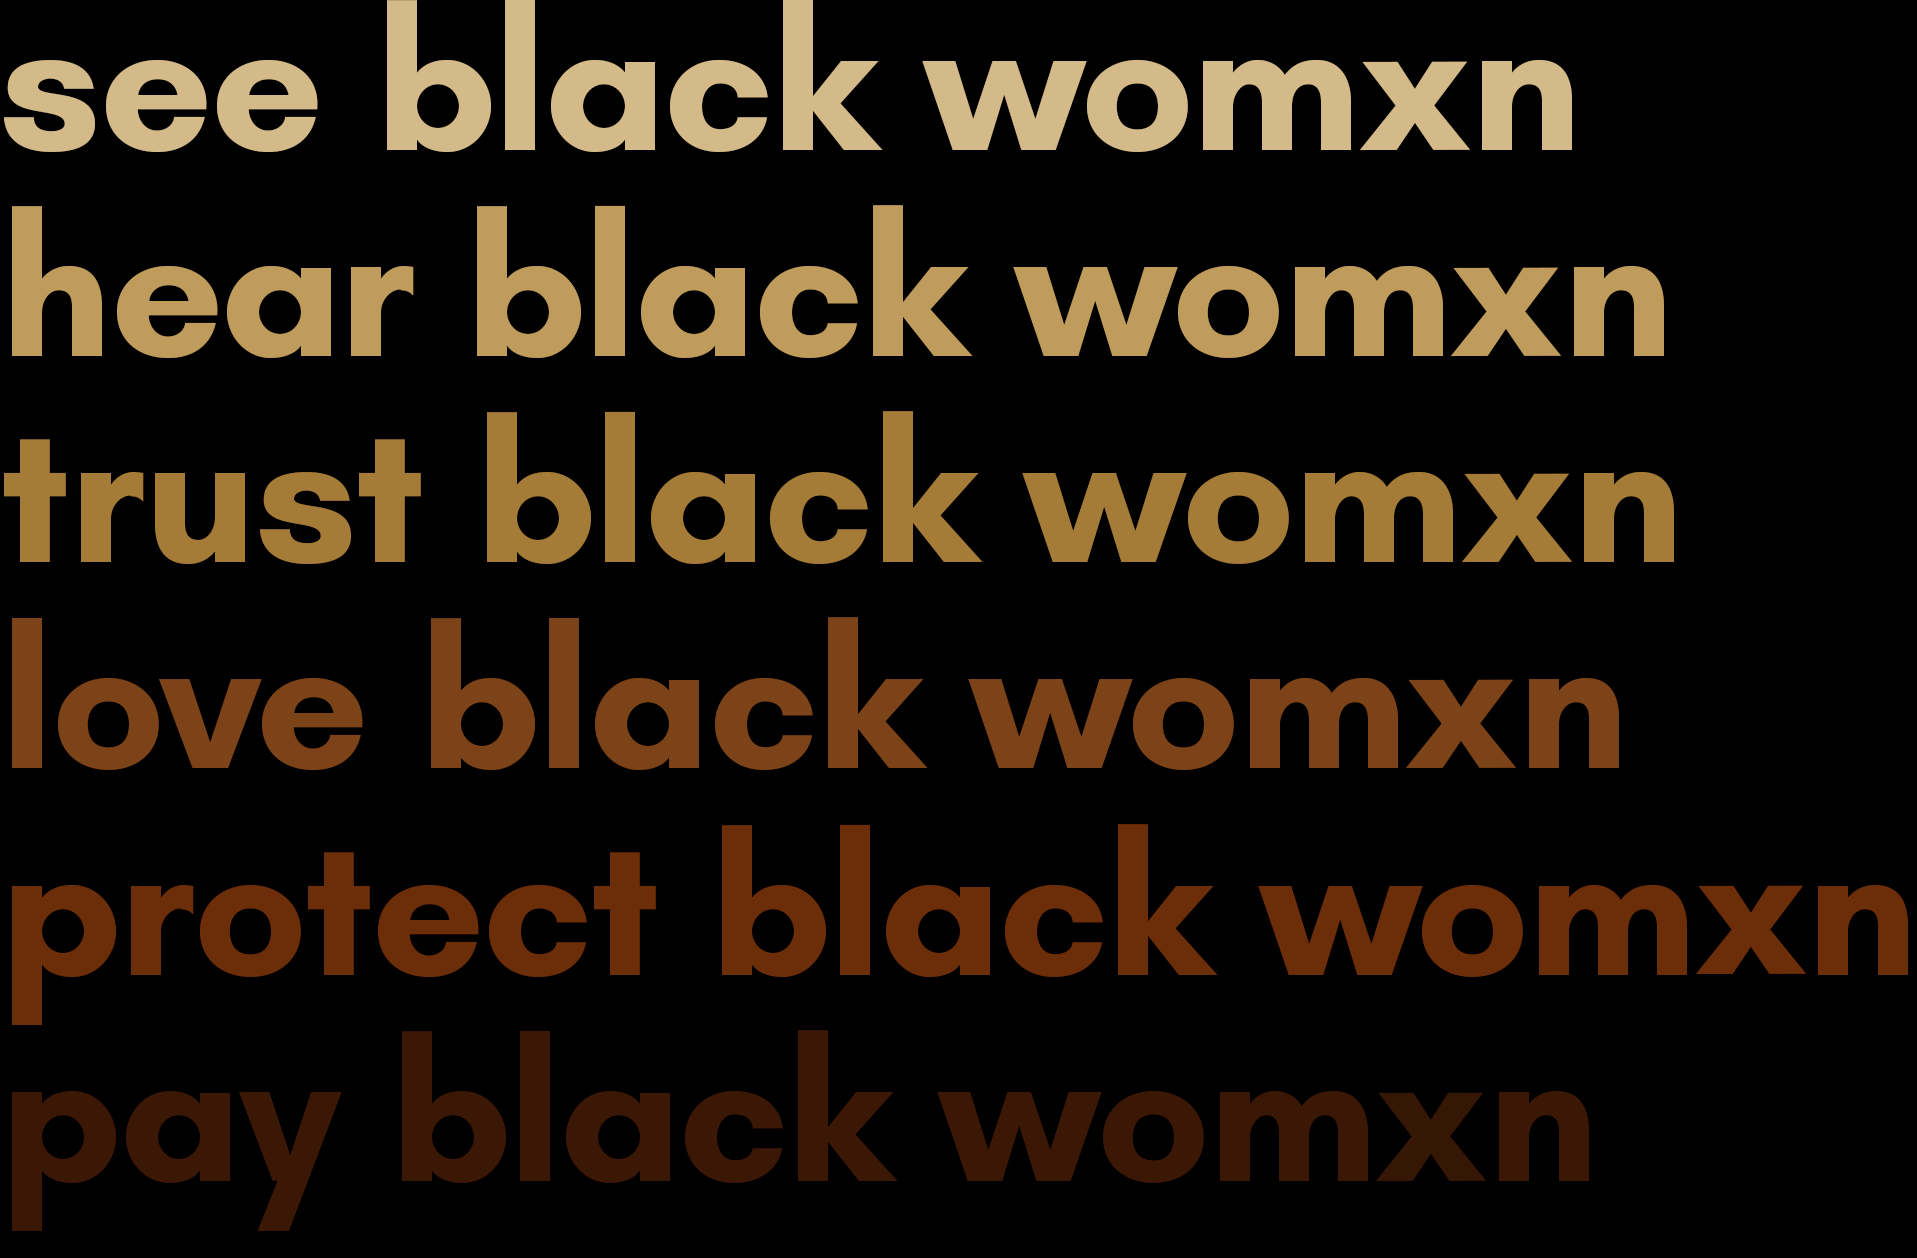 Black Women Under Attack